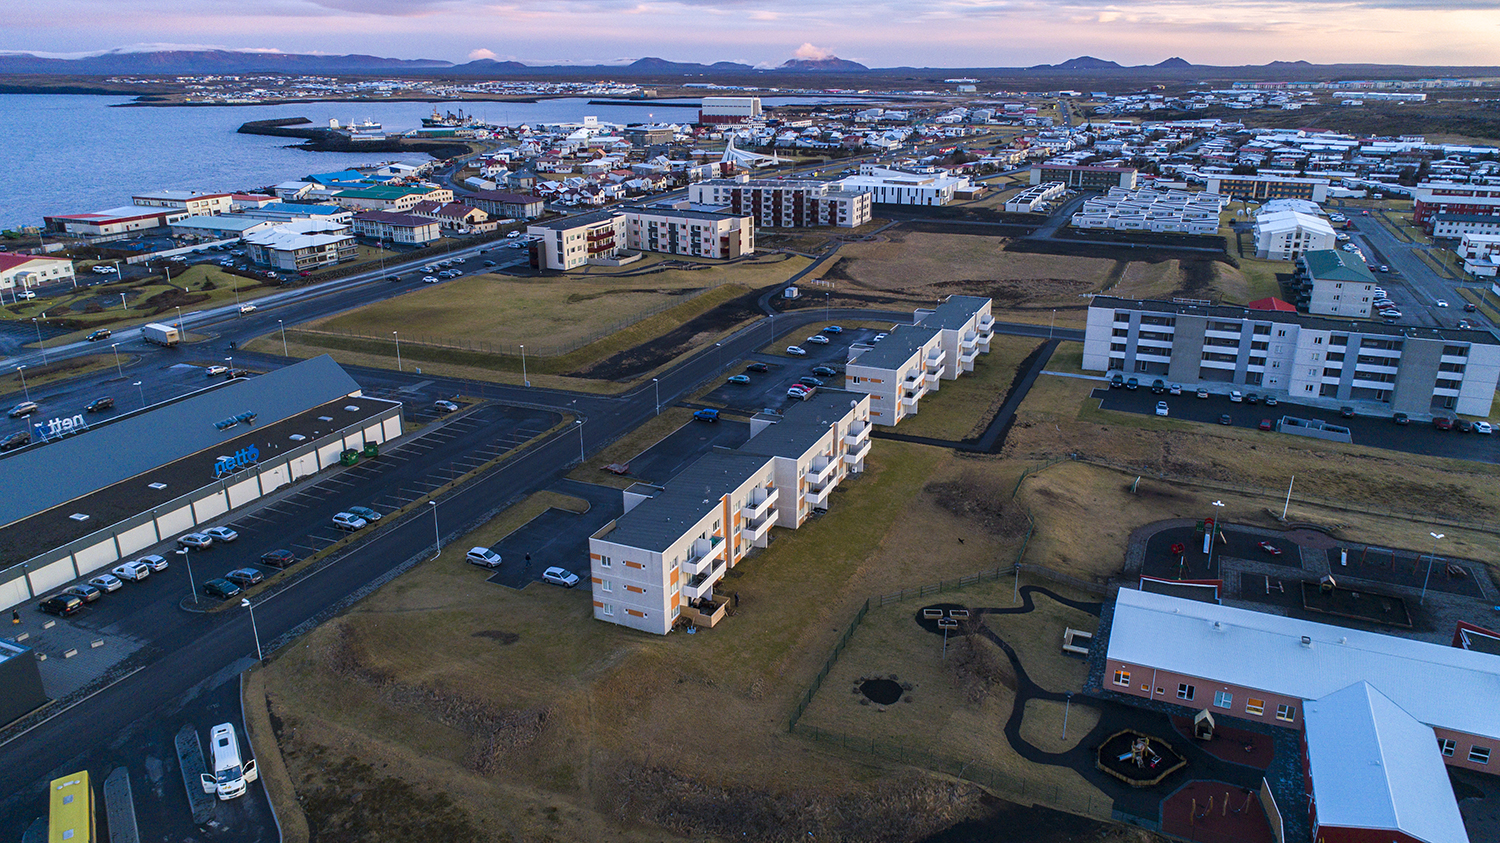 Leiguverð hækkaði mest á Suðurnesjum